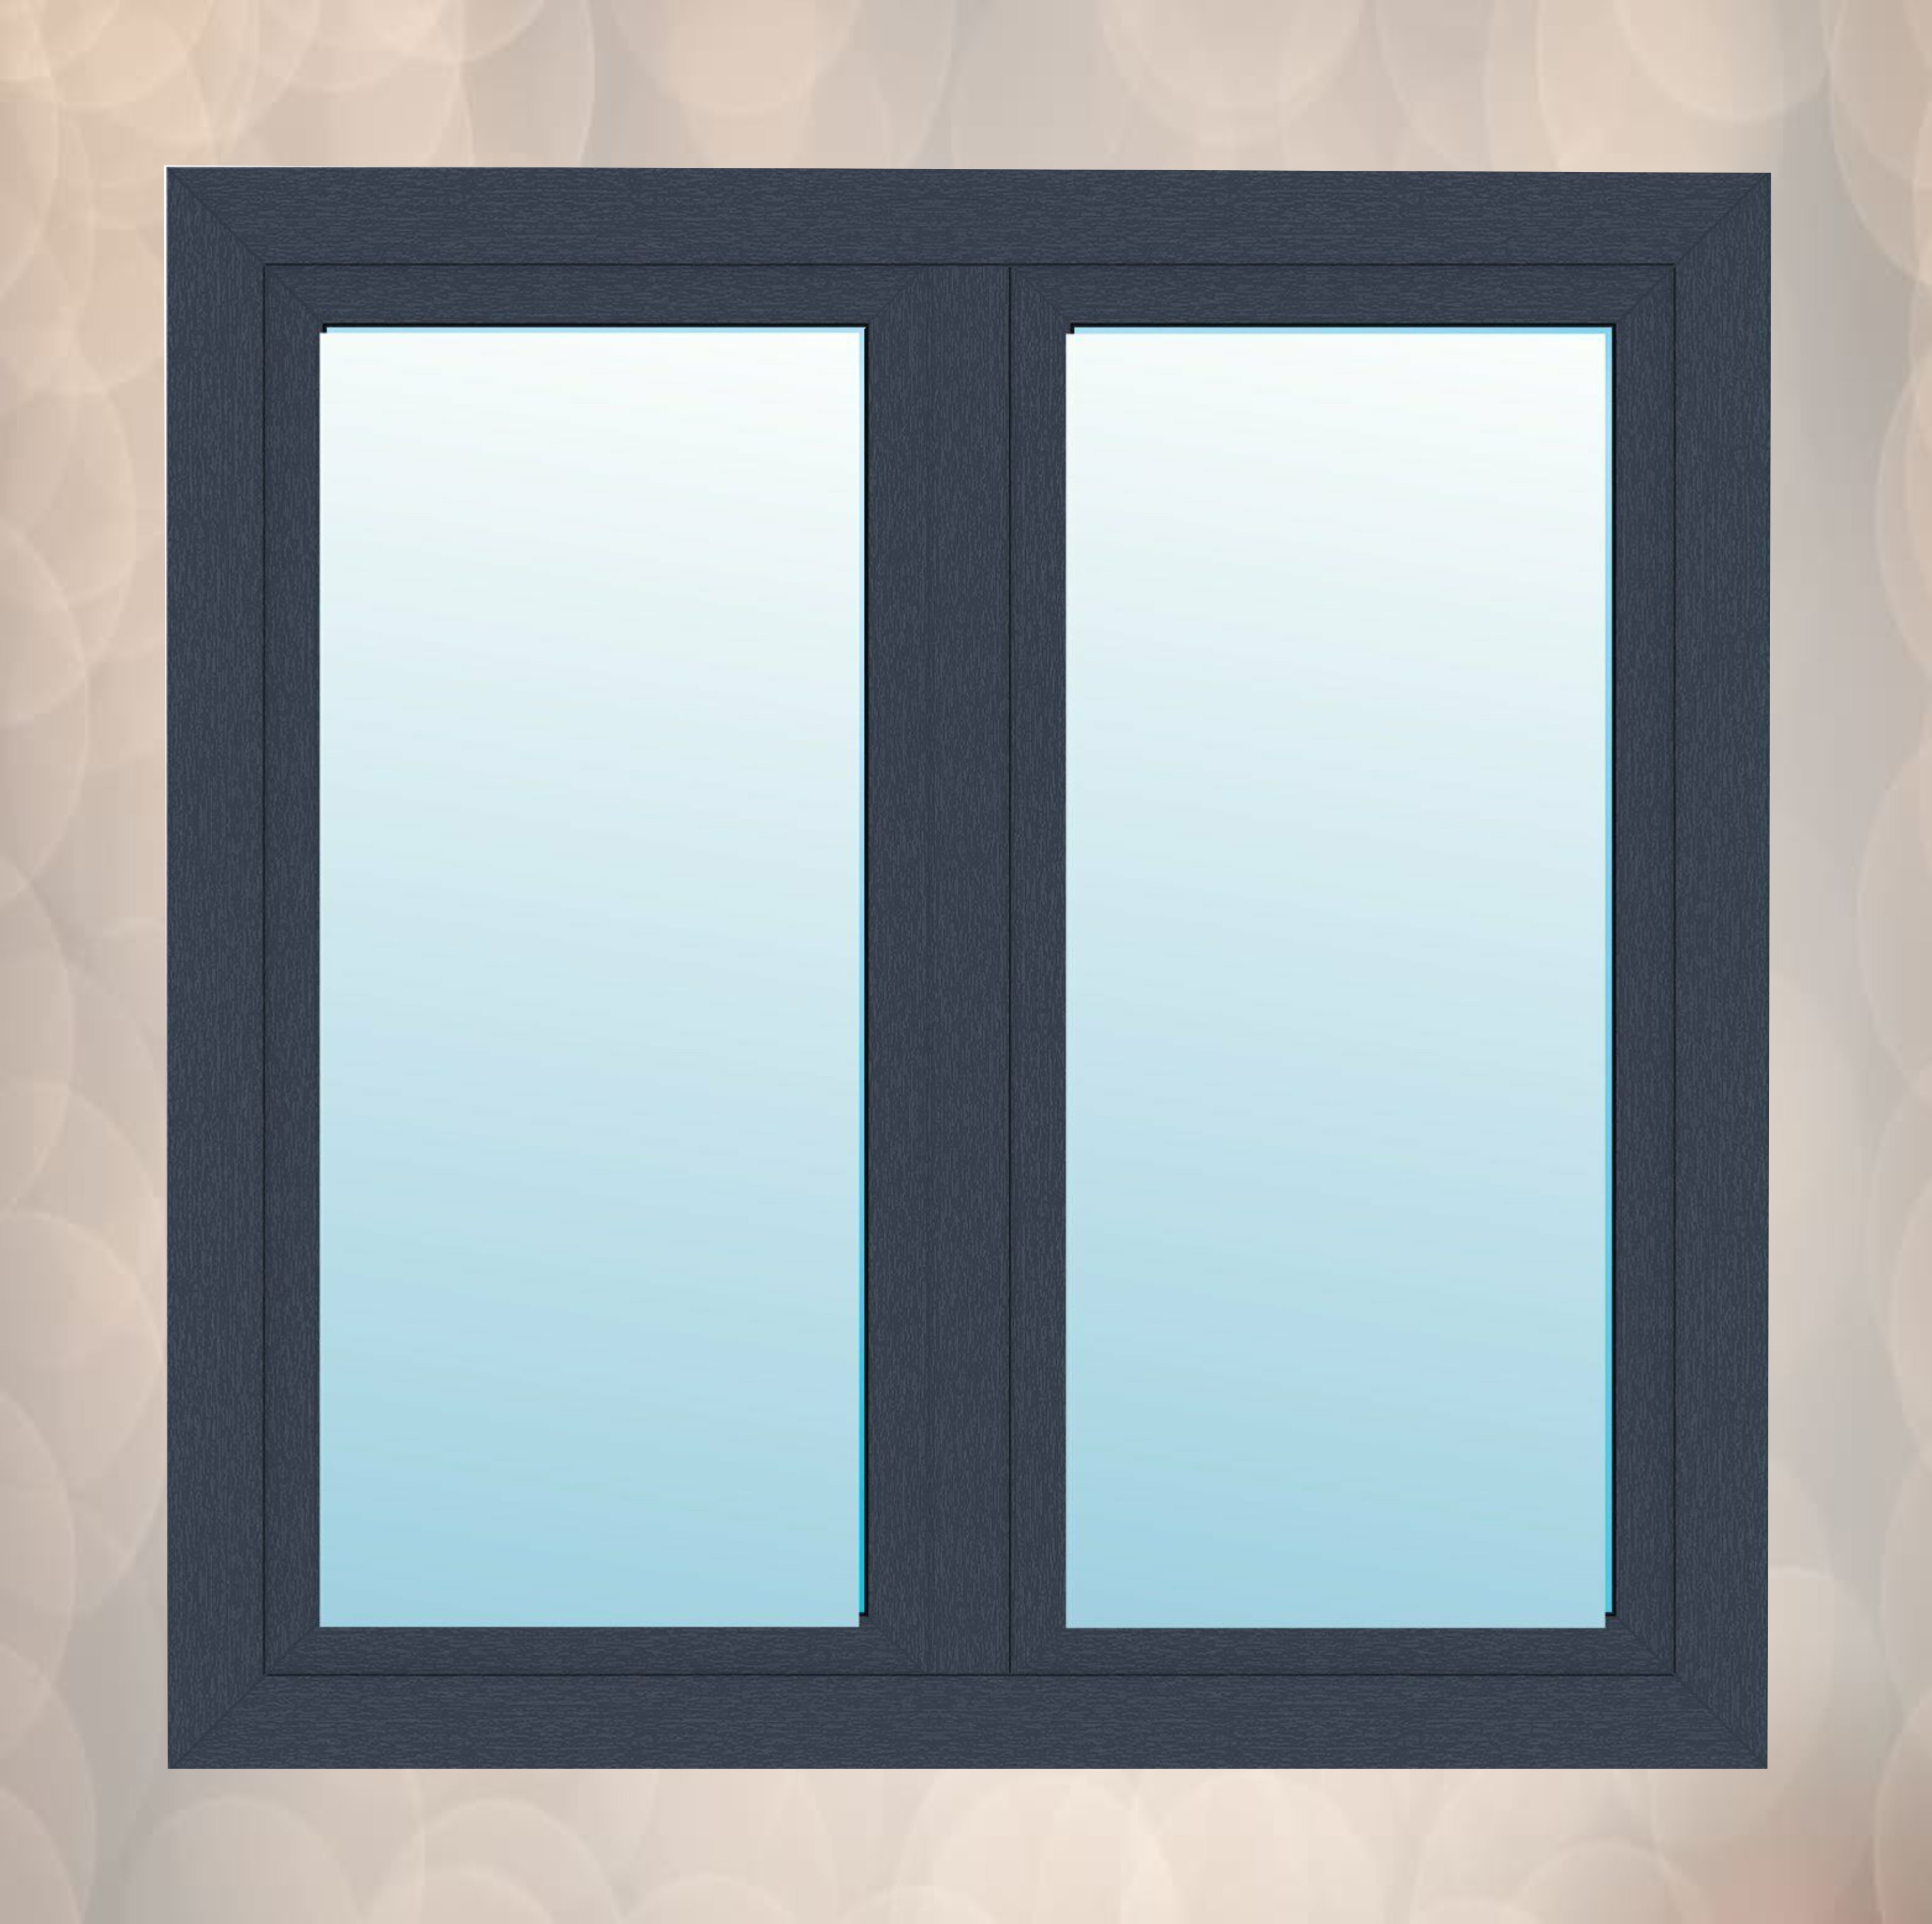 FENSTER Anthrazit Pfostenfenster 2-flügliges Kunststofffenster Fenster